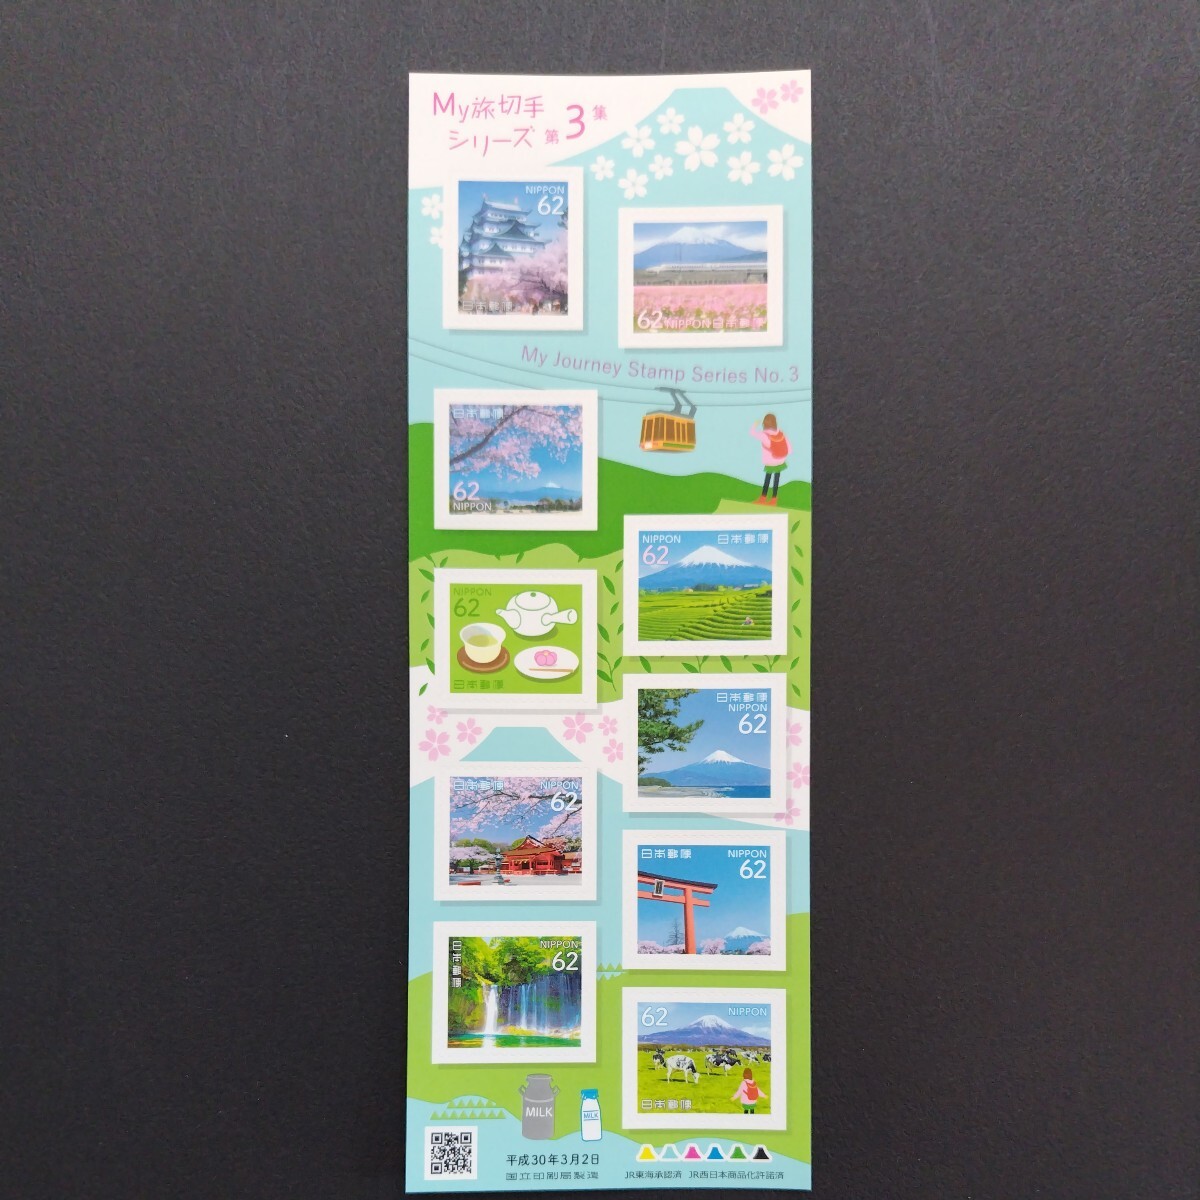 2018(平成30)年特殊切手(シール式)、「My旅切手シリーズ第3集 富士山亅、62円10枚、82円10枚、2シート、総額1,440円。各々リーフレット付。の画像3